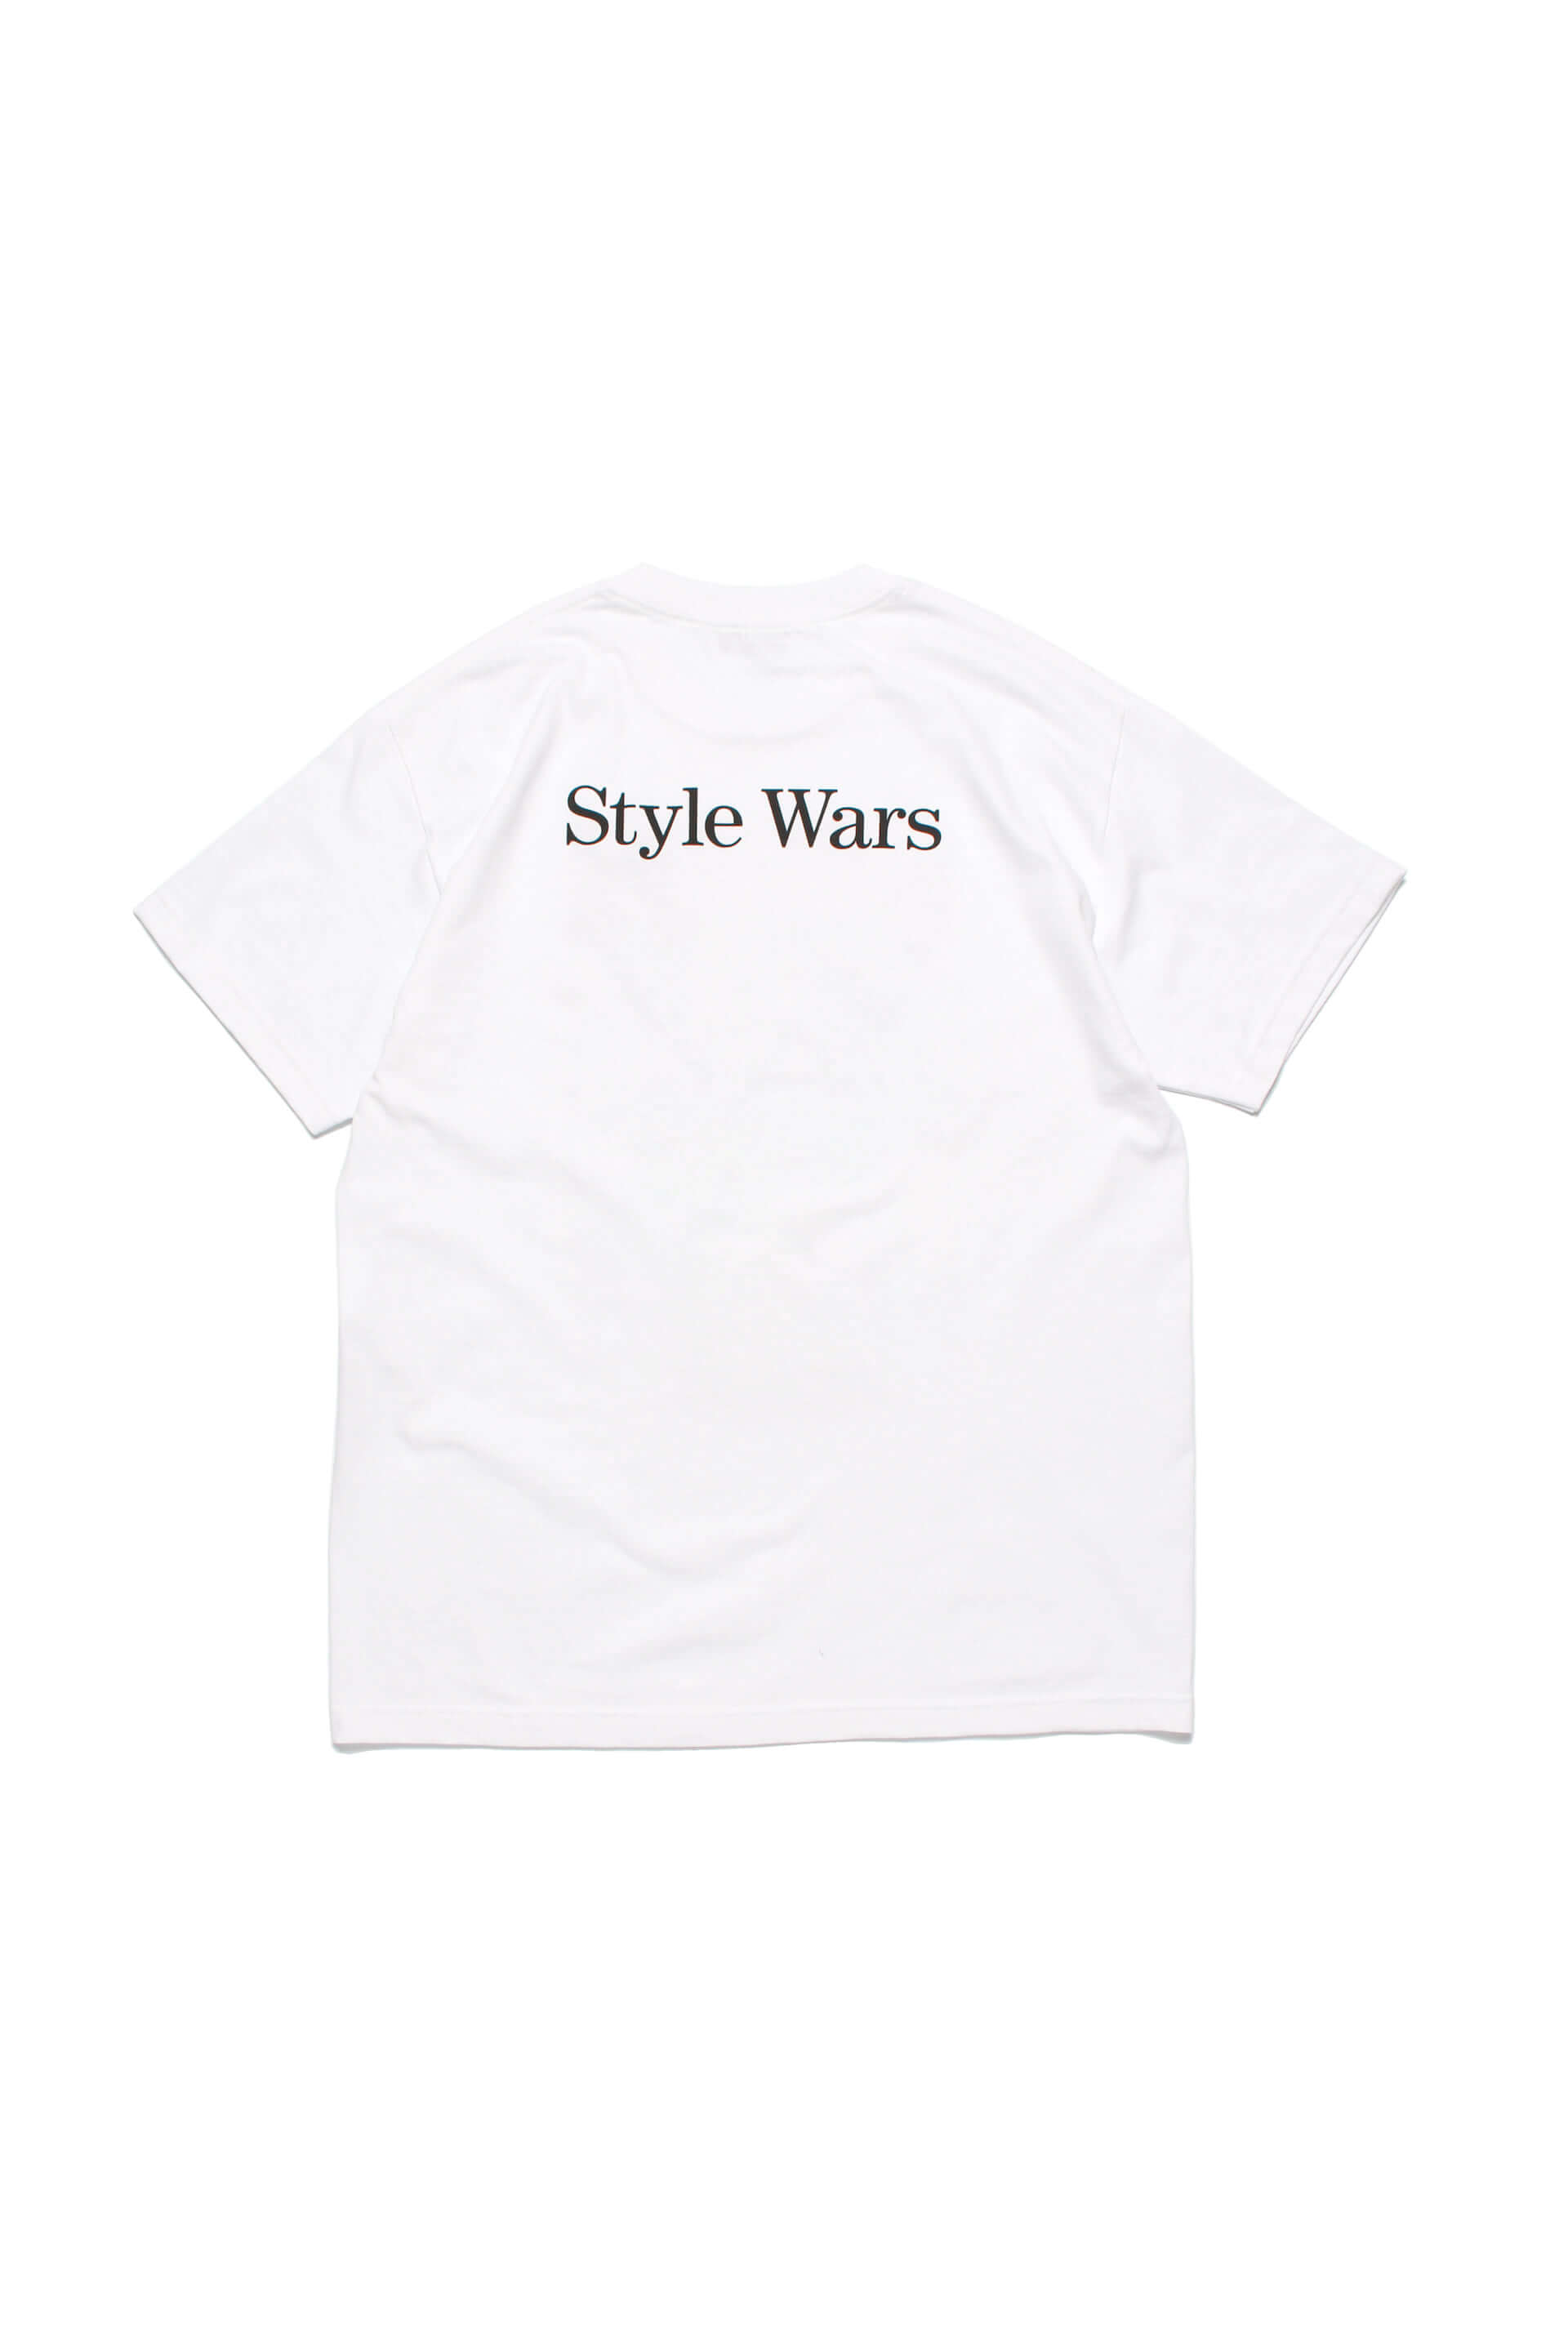 映画『Style Wars』とMUROのブランド「RECOGNIZE」がコラボ！NYストリートでの写真をプリントしたTシャツ2種が発売決定 film210322_stylewars_6-1920x2880